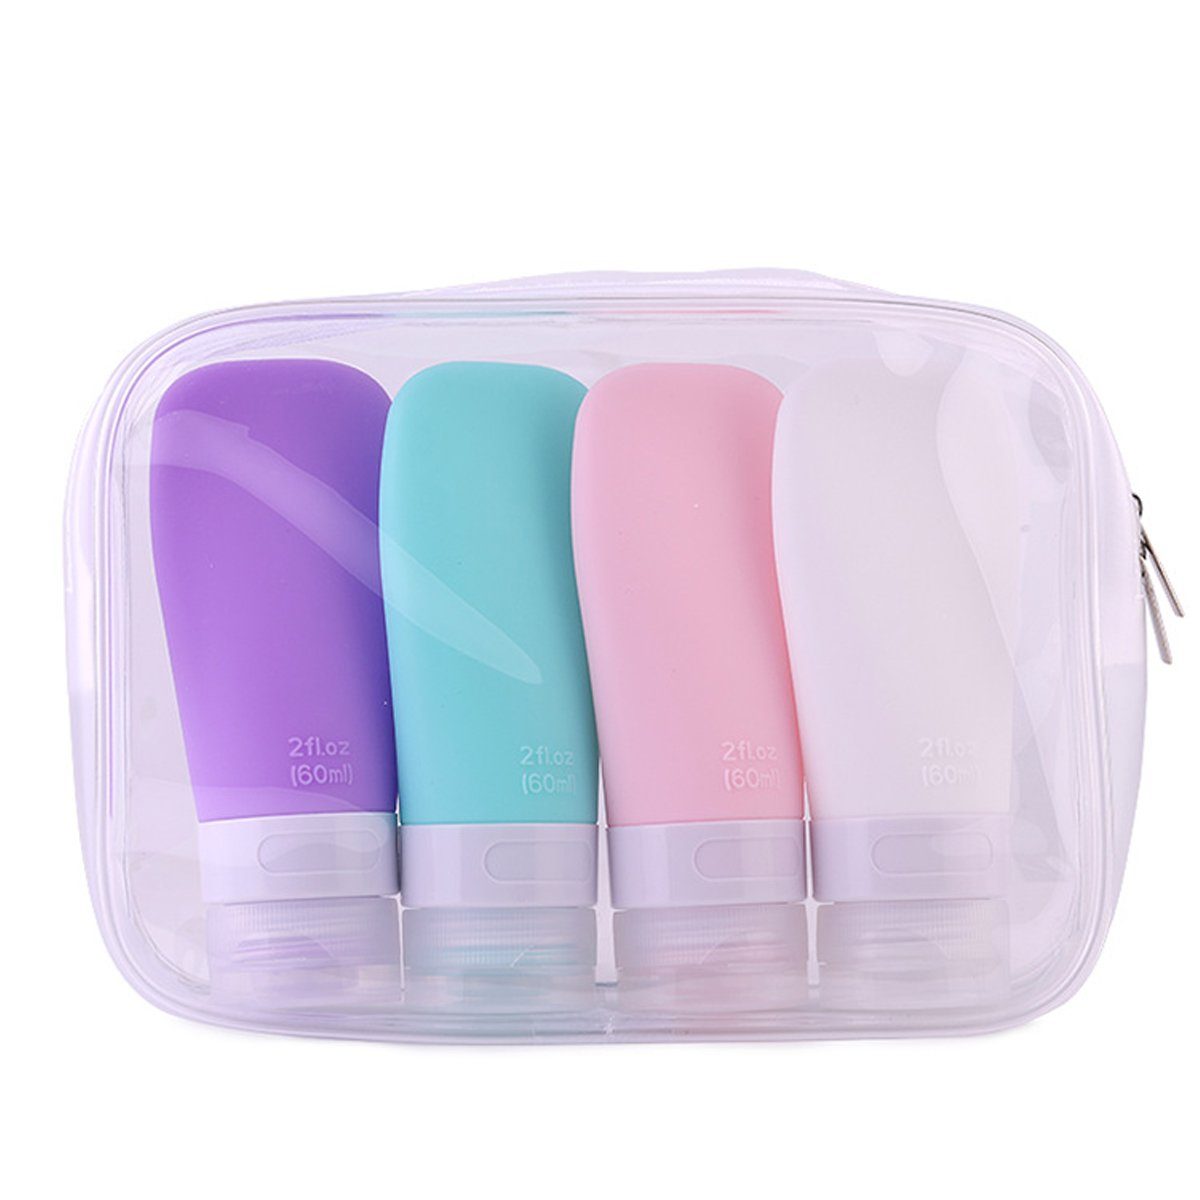 Jormftte Reisebehälter Silikon Reiseflaschen Set,Portable Reise  Container,für Shampoo Creme